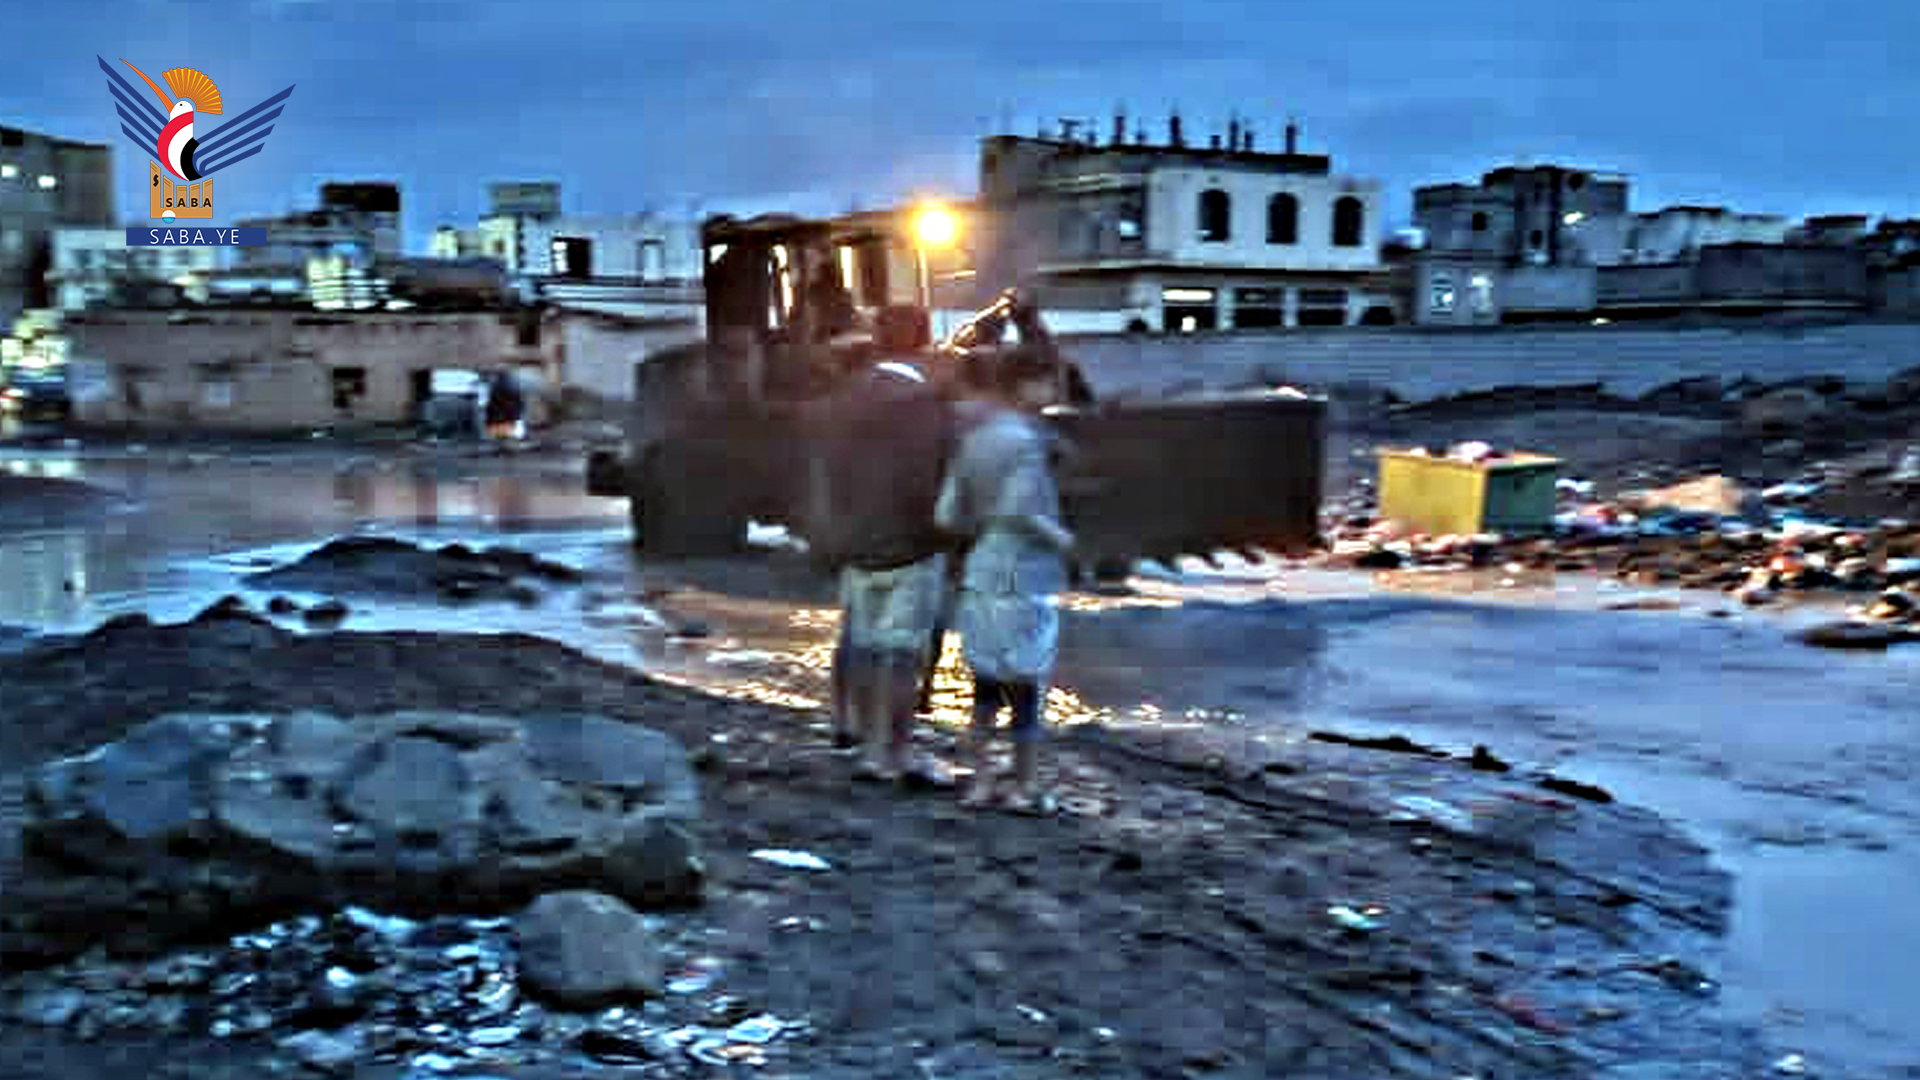   Réalisation de travaux d'urgence pour ouvrir des routes et drainer des eaux torrentielles à Heziaz, Sana'a